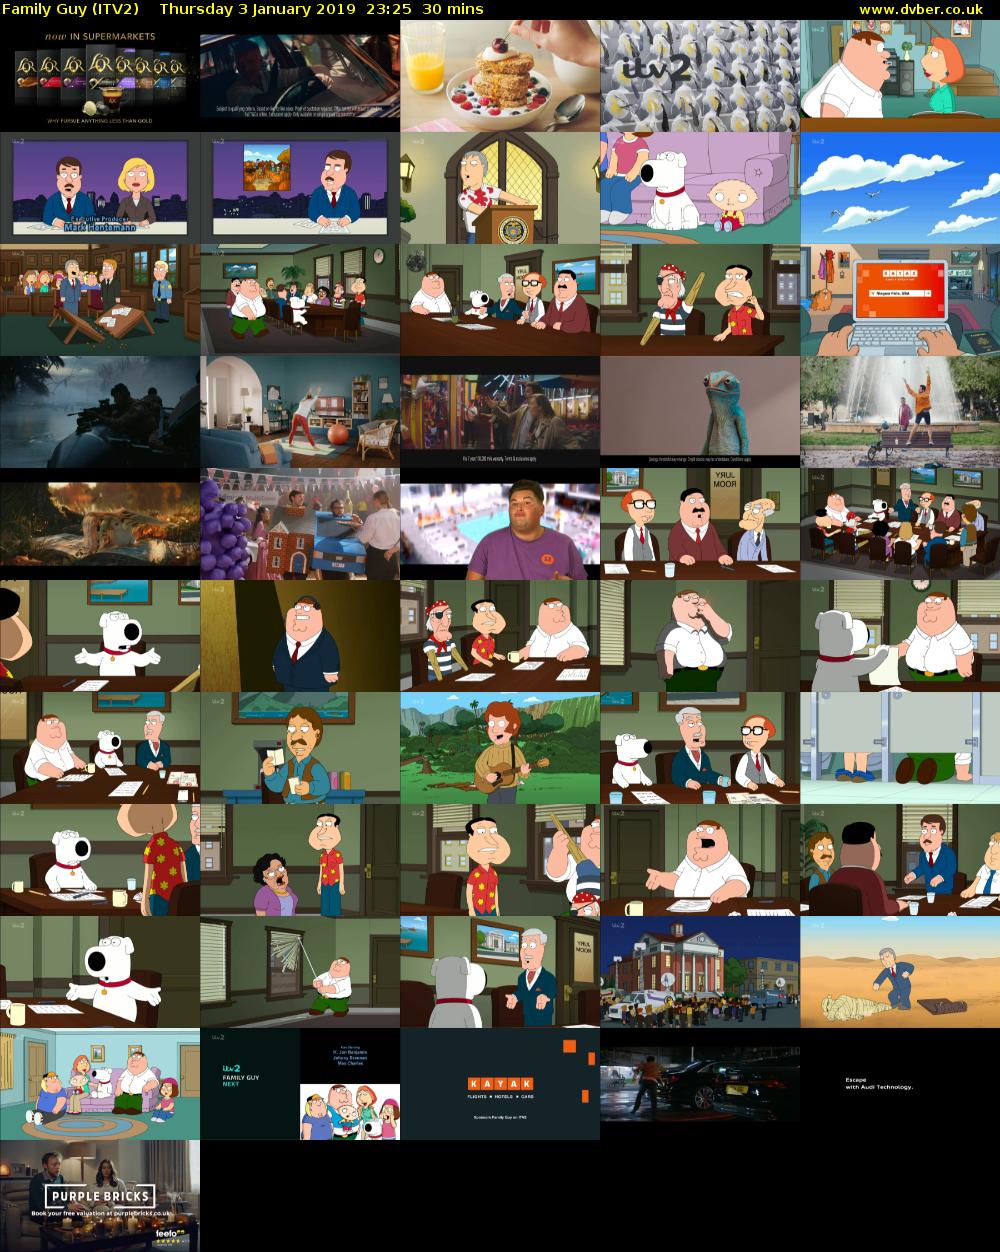 Family Guy (ITV2) Thursday 3 January 2019 23:25 - 23:55